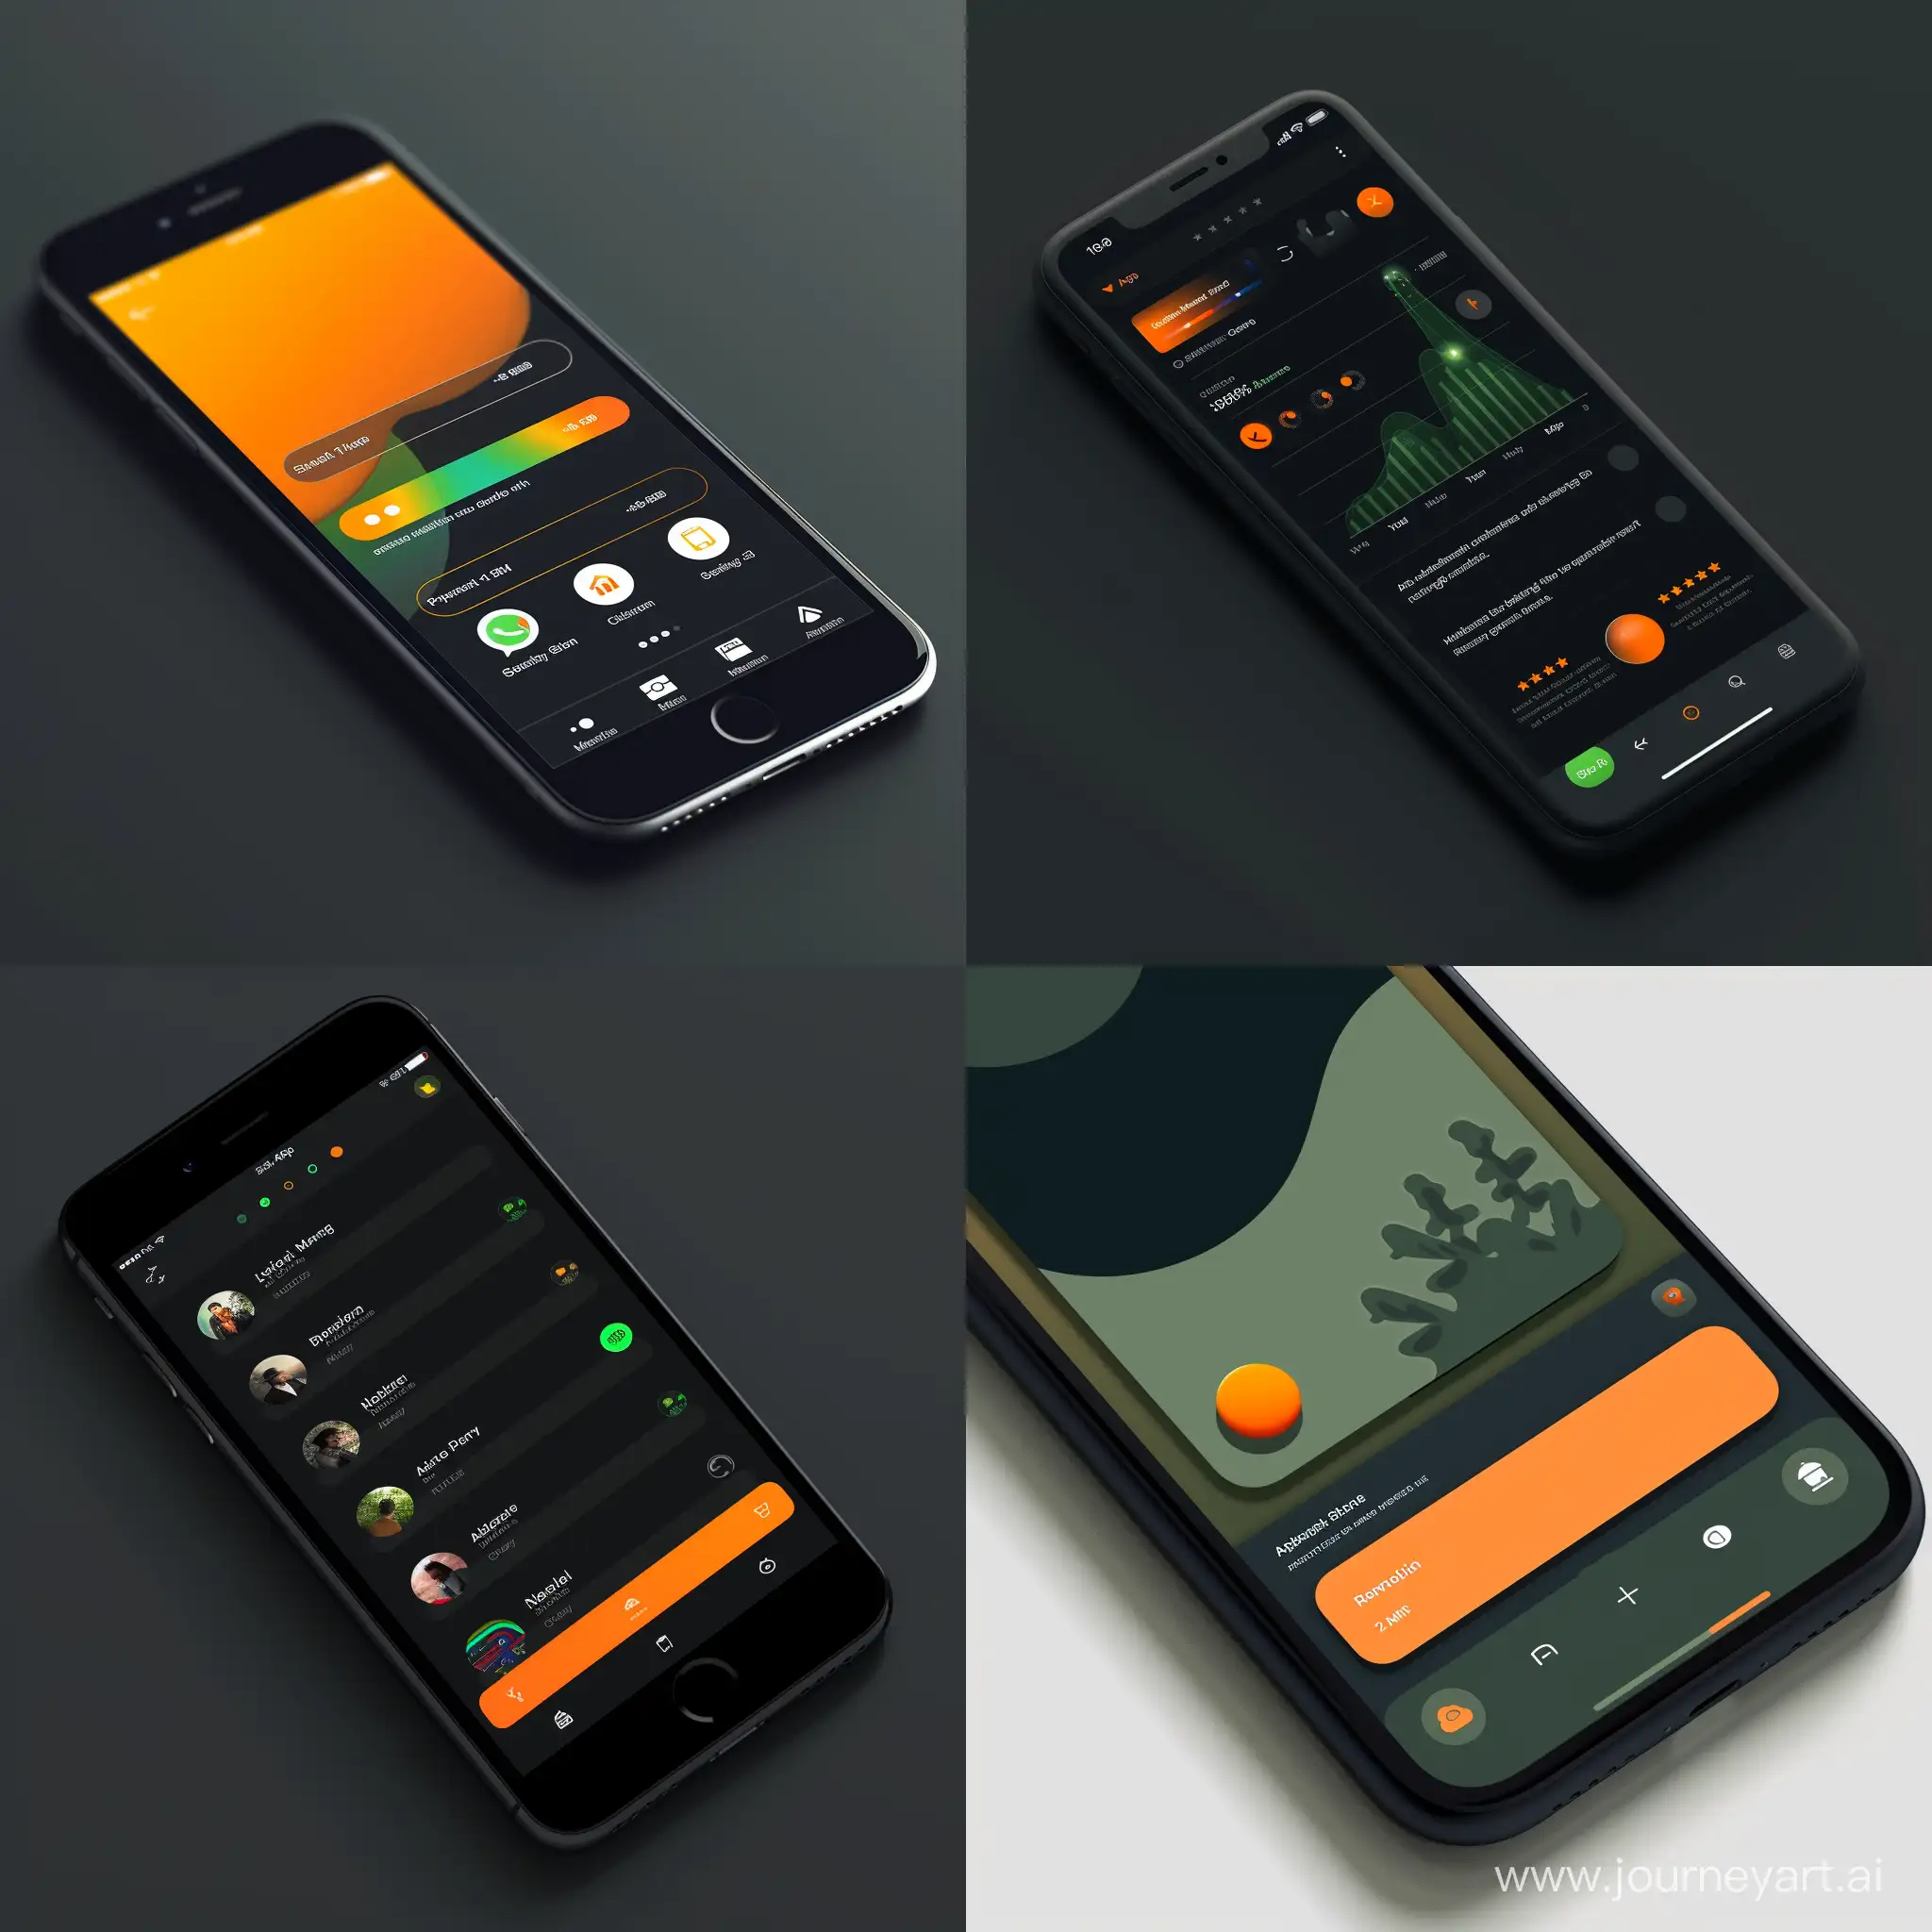 modern ios app navigation bar at bottom of app
main color - dark
color 1 - green
color 2 - orange
